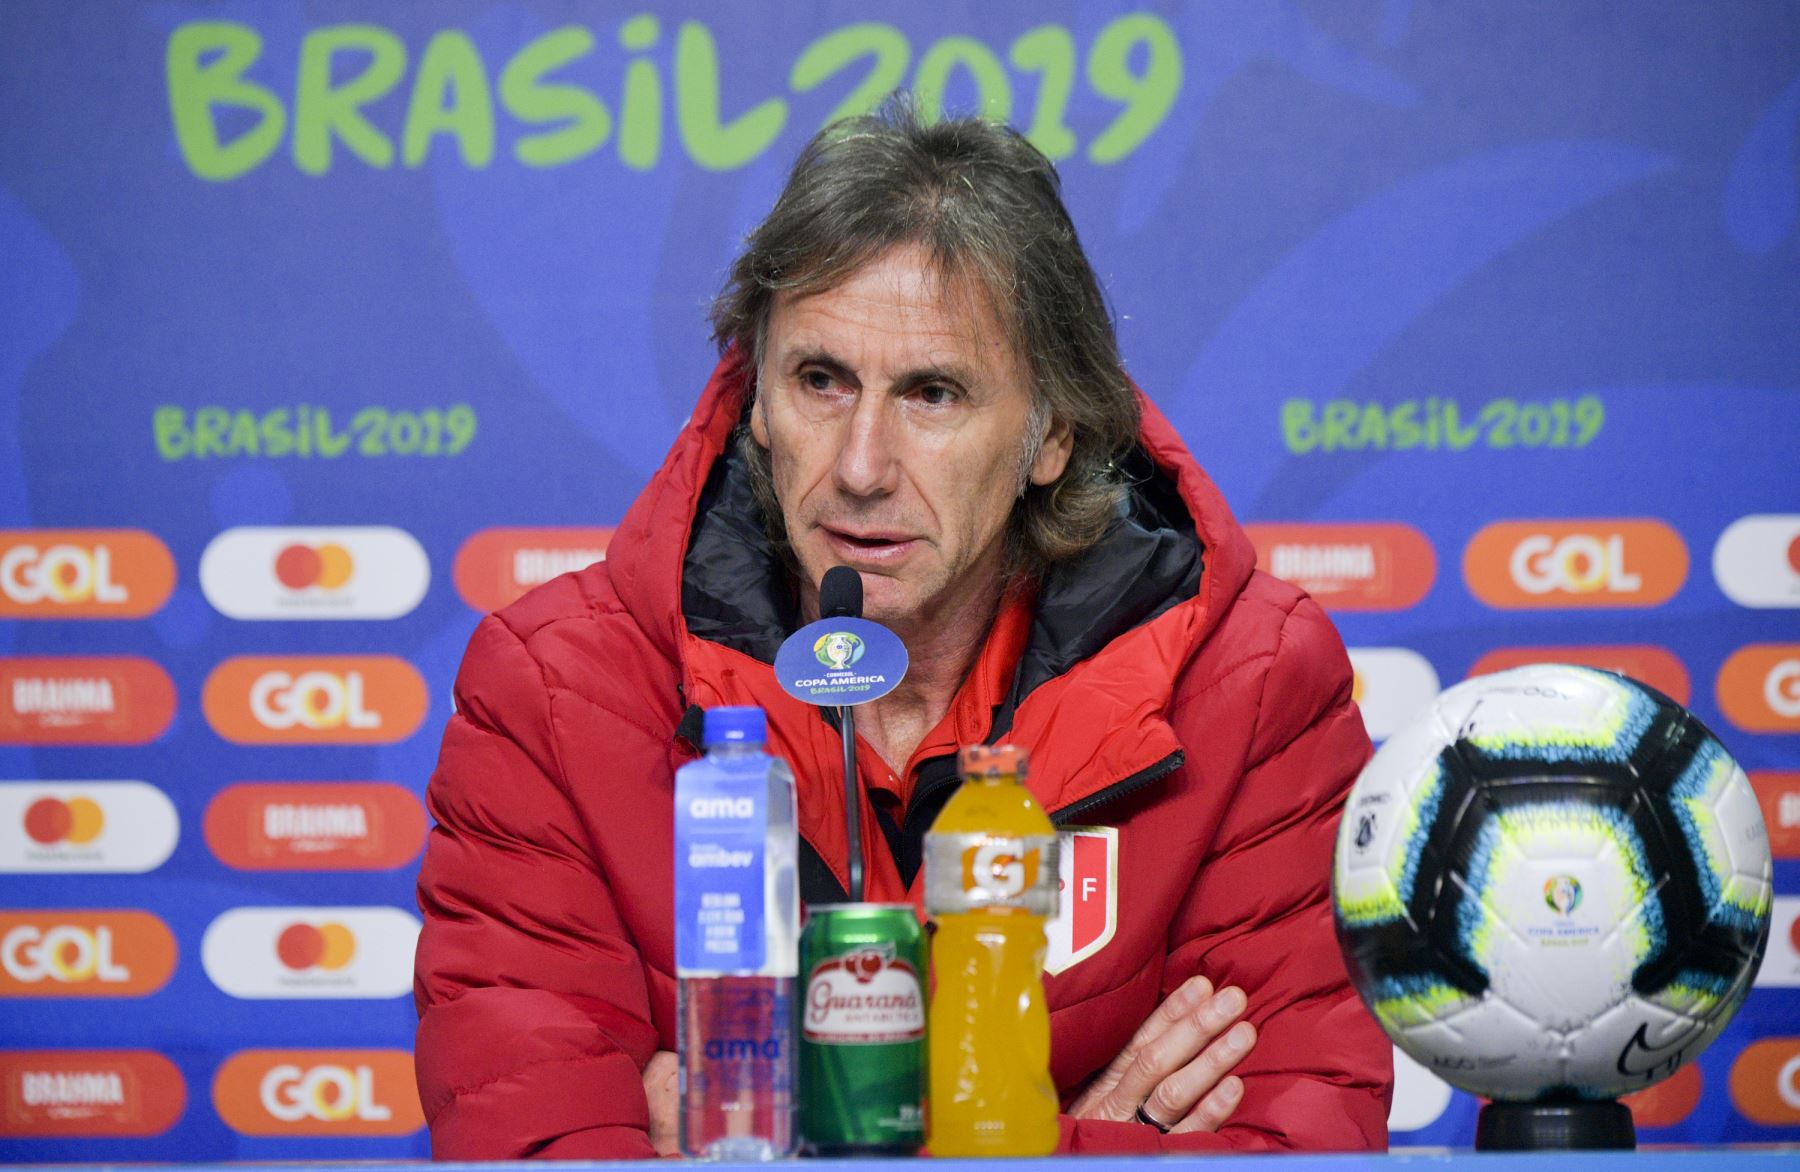 El entrenador de Perú, Ricardo Gareca, habla durante una conferencia de prensa en Porto Alegre, Brasil, el 2 de julio de 2019, en la víspera de su semifinal de la Copa América contra Chile.
Foto:AFP